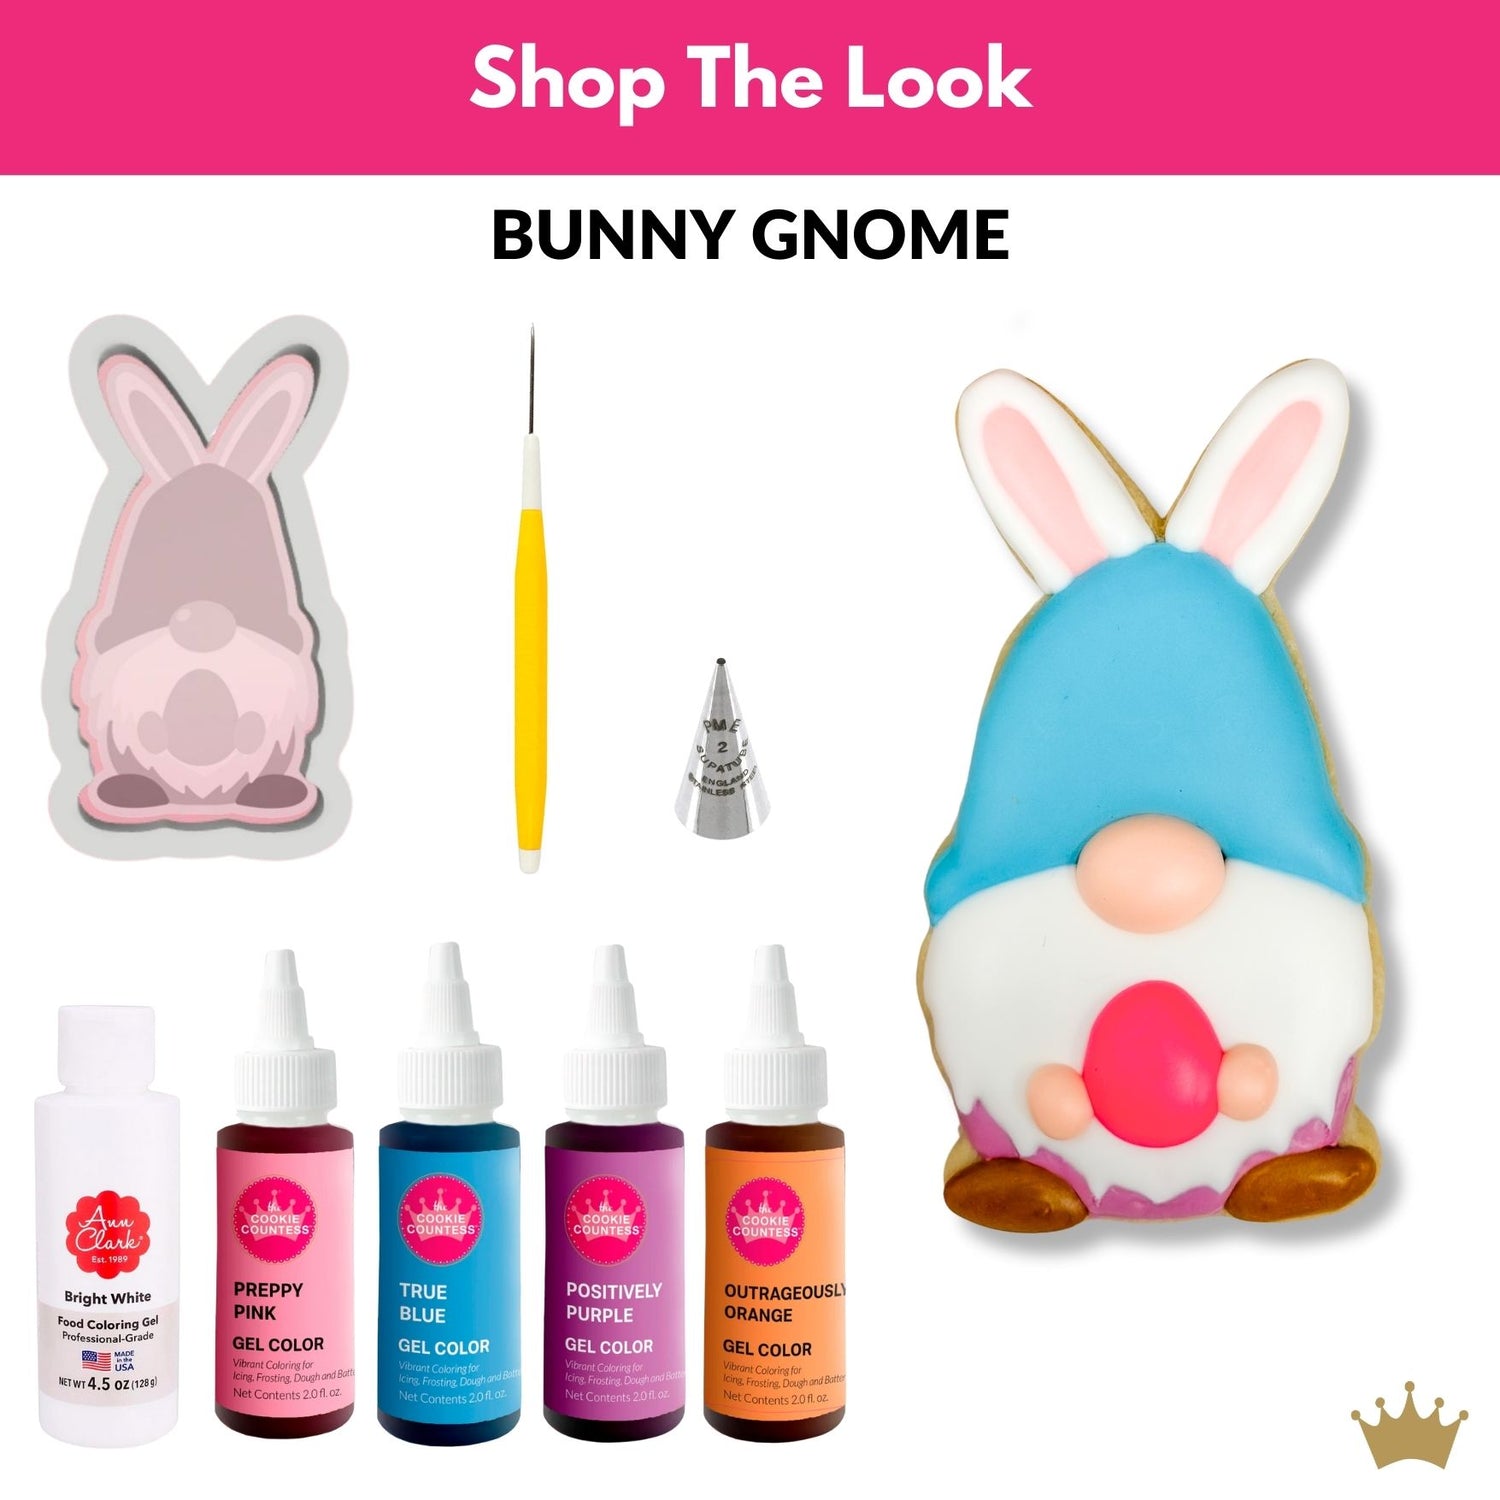 Bunny Gnome